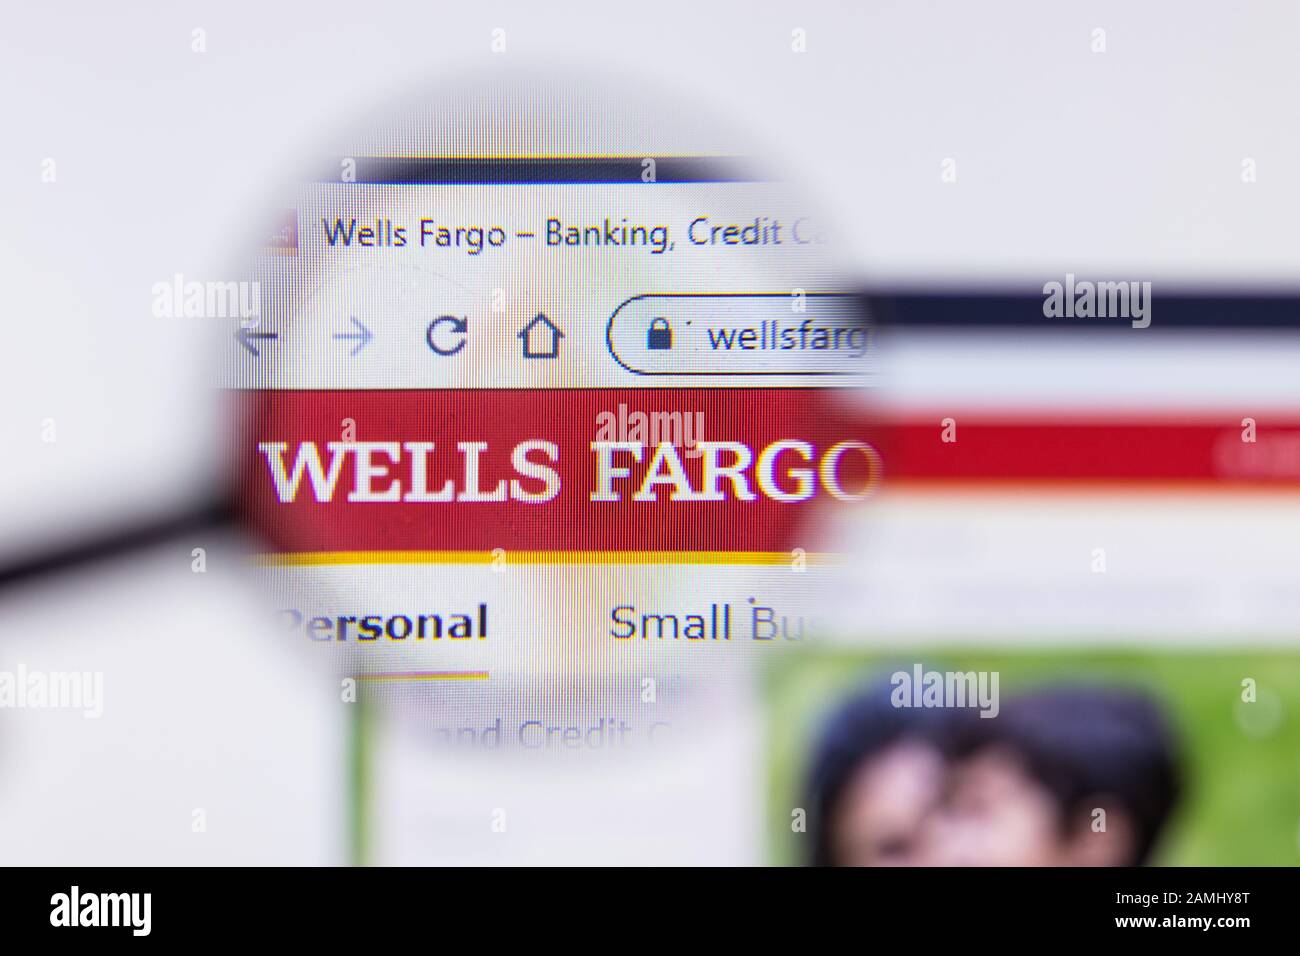 Saint-Pétersbourg, Russie - 10 janvier 2020: Page du site web de Wells Fargo sur un écran d'ordinateur portable avec logo, éditorial illustratif Banque D'Images